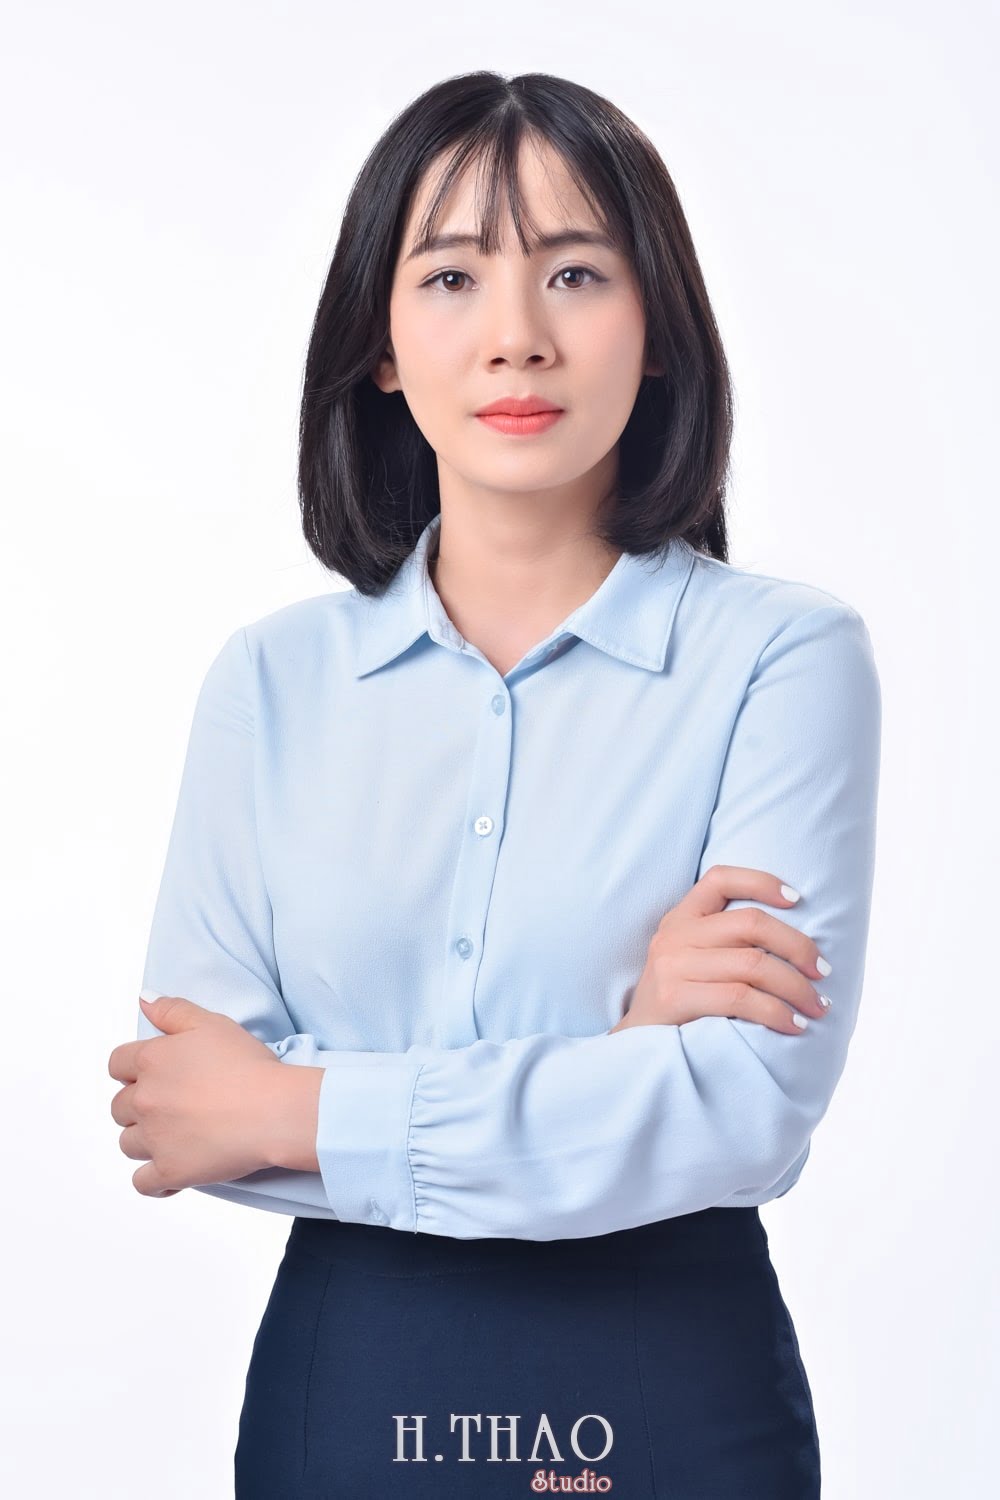 Anh profile  1 min - Tổng hợp ảnh profile nghề nghiệp bác sĩ, ngân hàng đẹp- HThao Studio